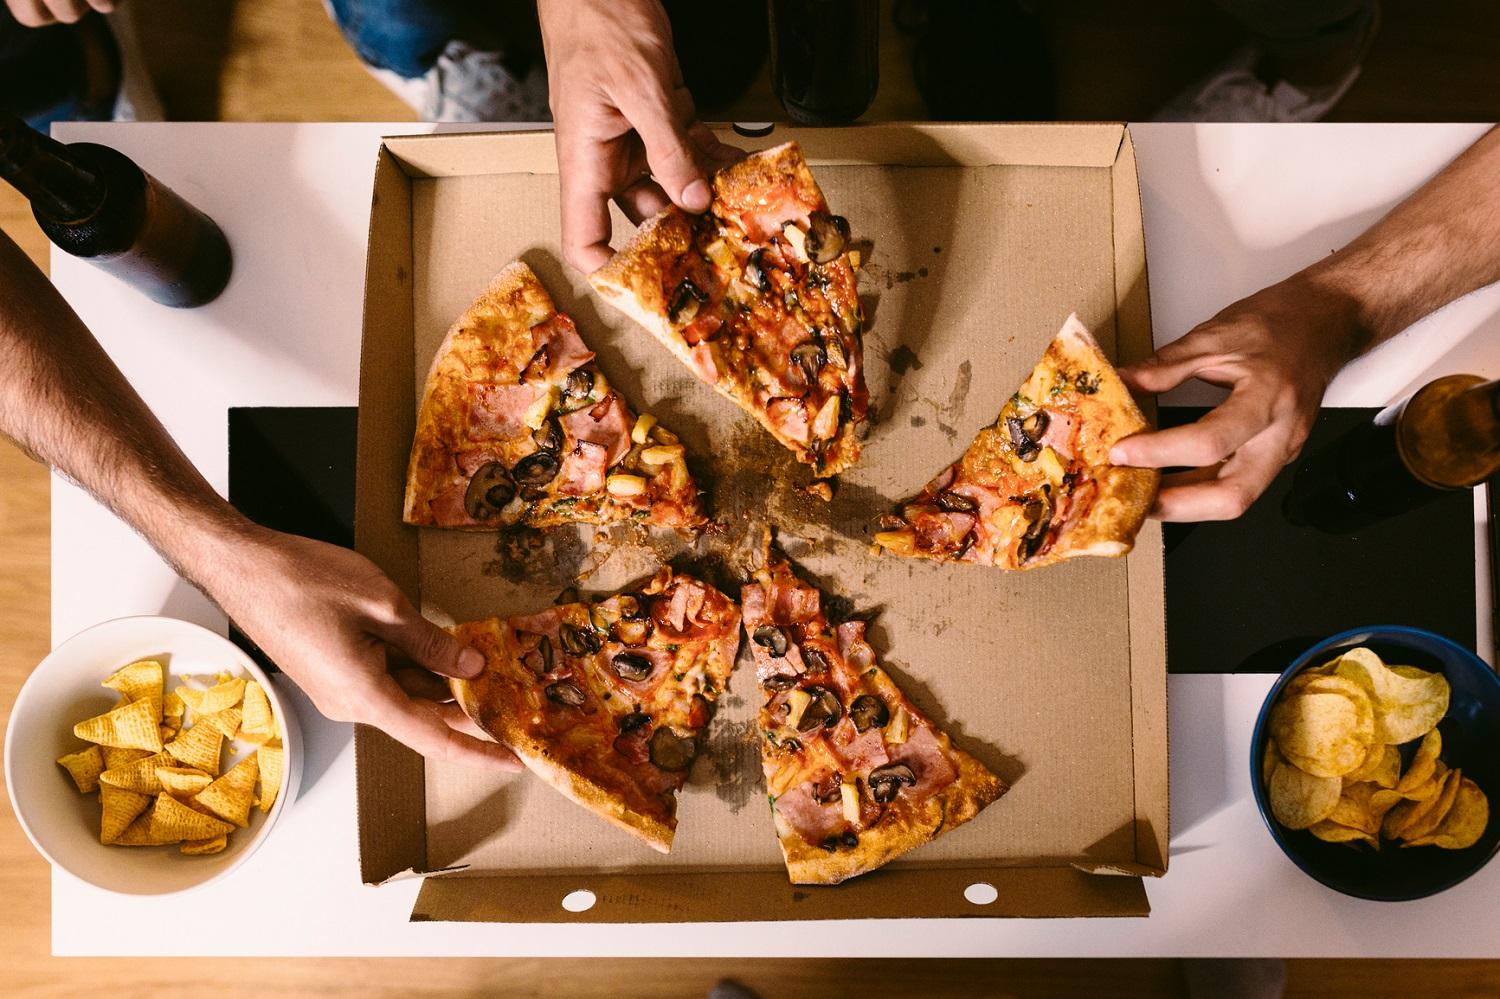 Richtige Ernährung nach dem Sport: Drei Hände greifen nach Pizzastücken in einem Karton